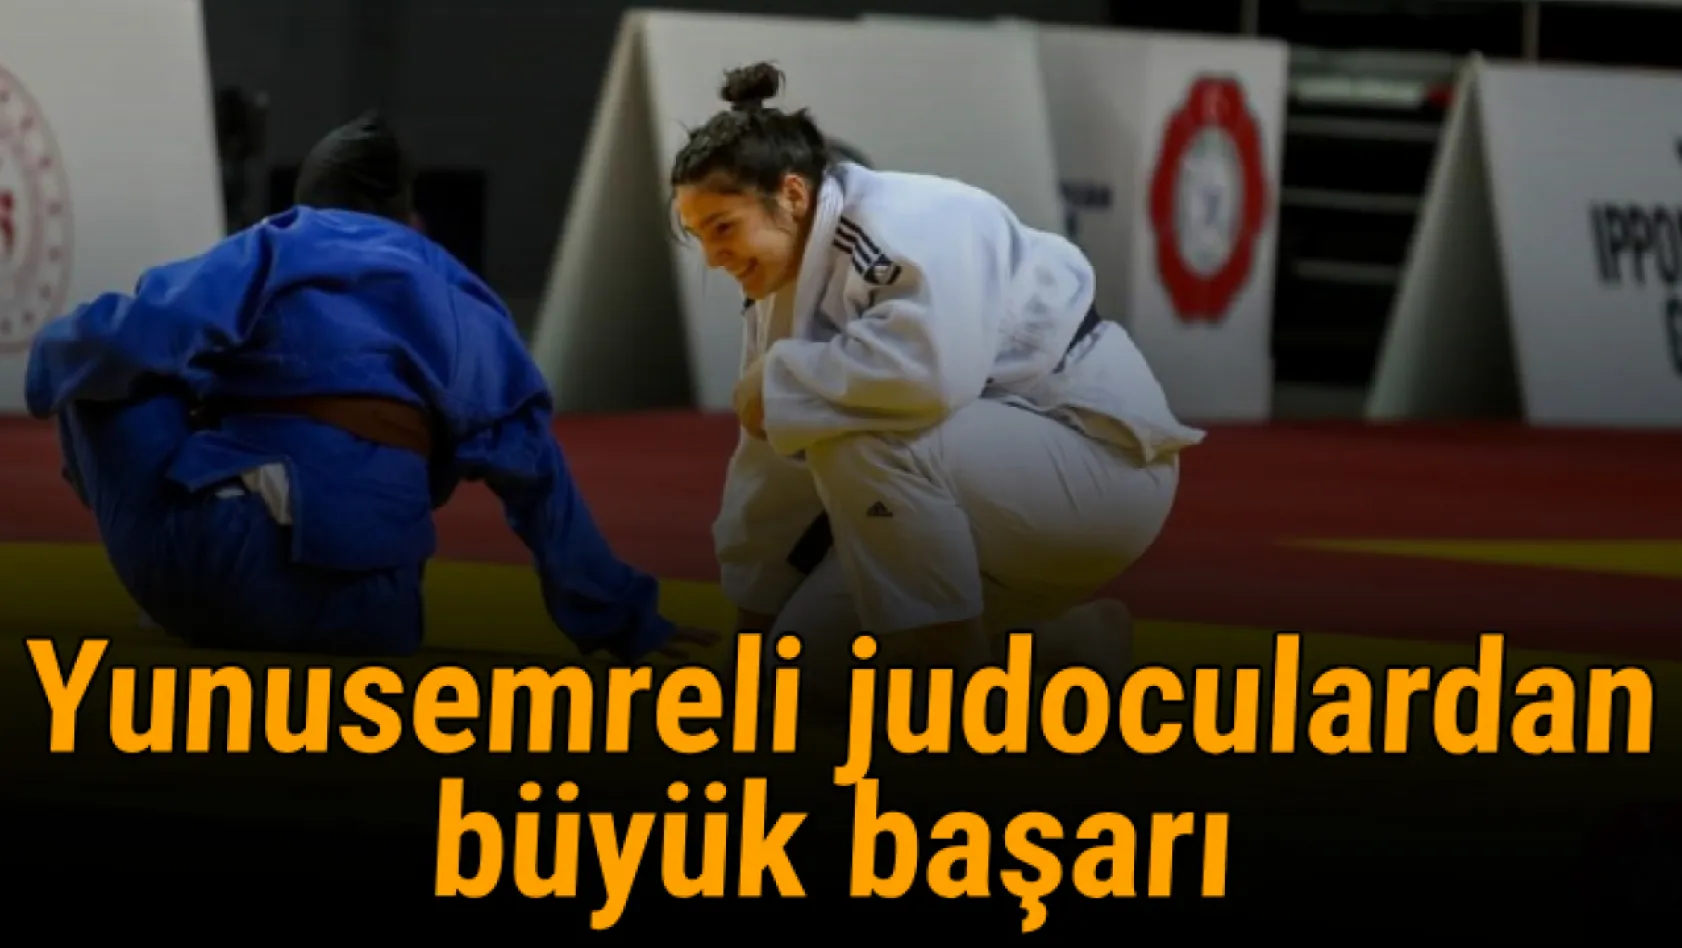 Yunusemreli judoculardan büyük başarı